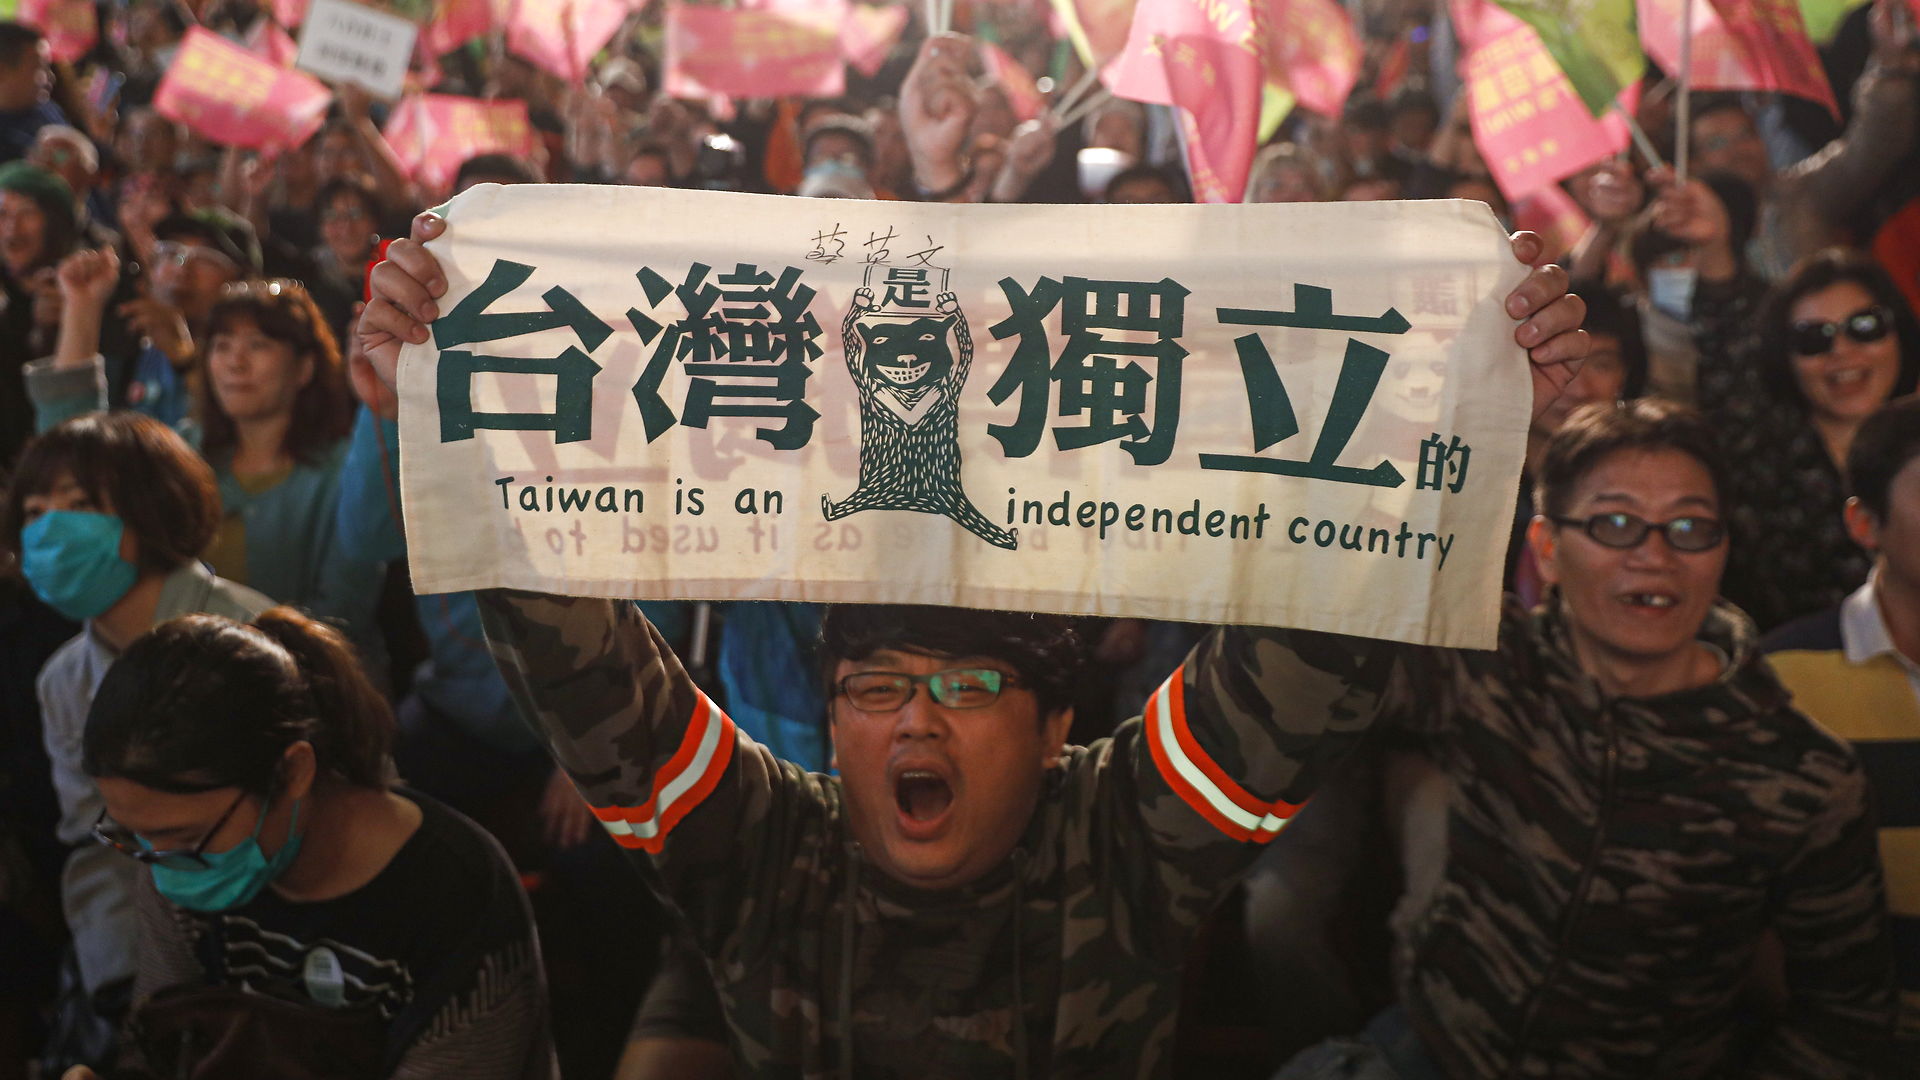 Peter T. Kristoffersen: Præsidentvalget i Taiwan blev en endelig afvisning af en fremtidig genforening med Kina. Hvordan reagerer Beijing nu?